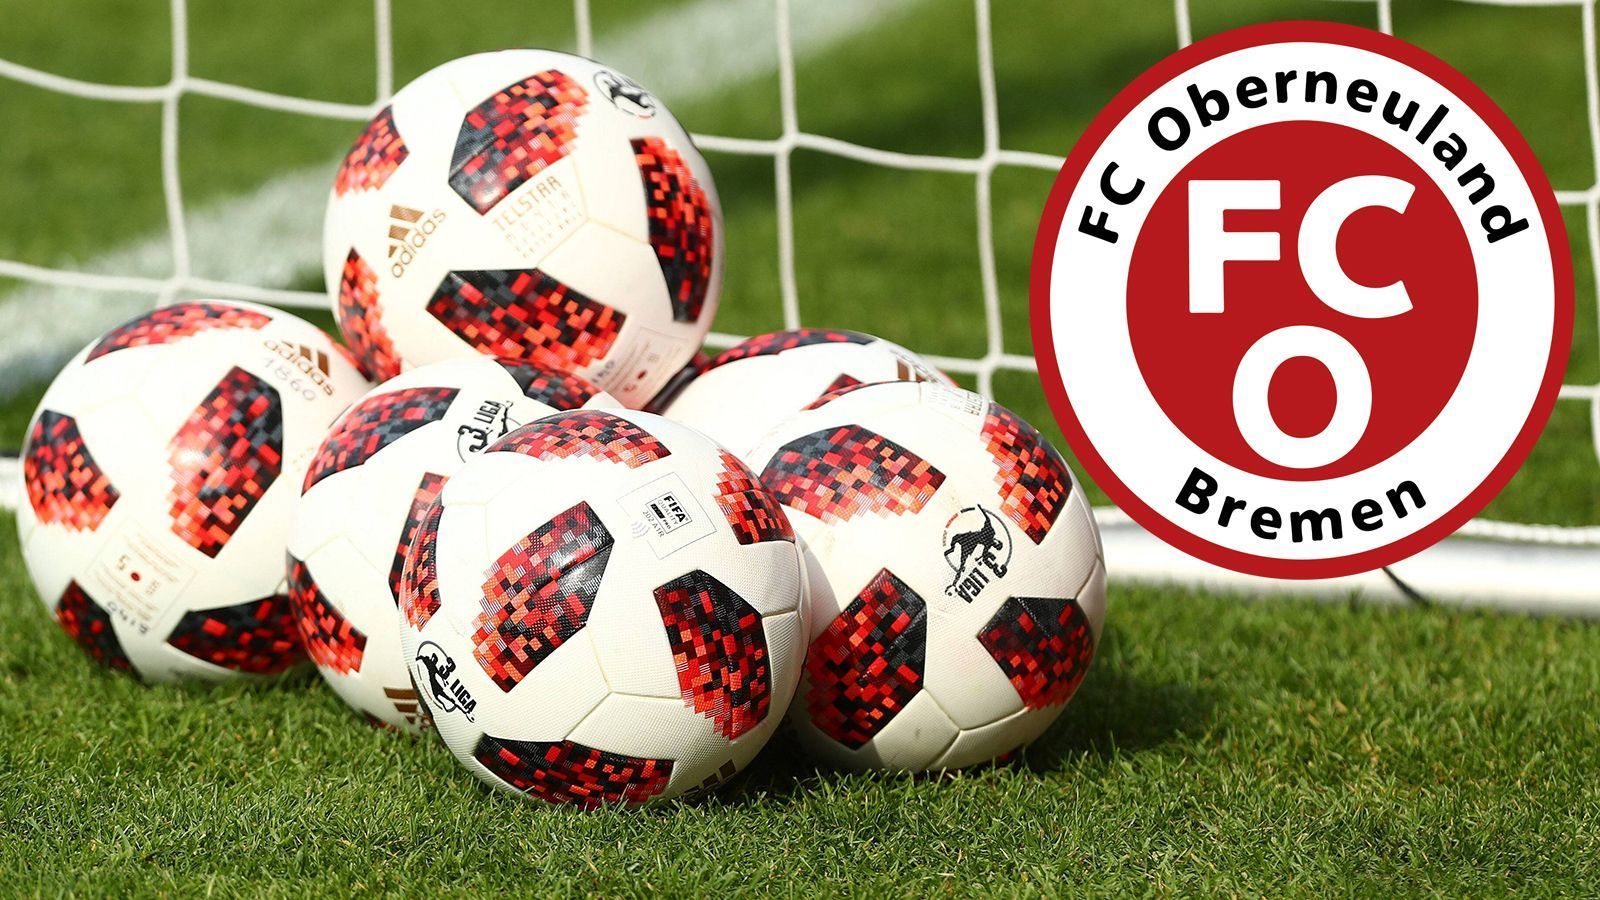 
                <strong>FC Oberneuland </strong><br>
                Landespokalsieger Bremen: 1:0-Finalsieg gegen den Bremer SV
              